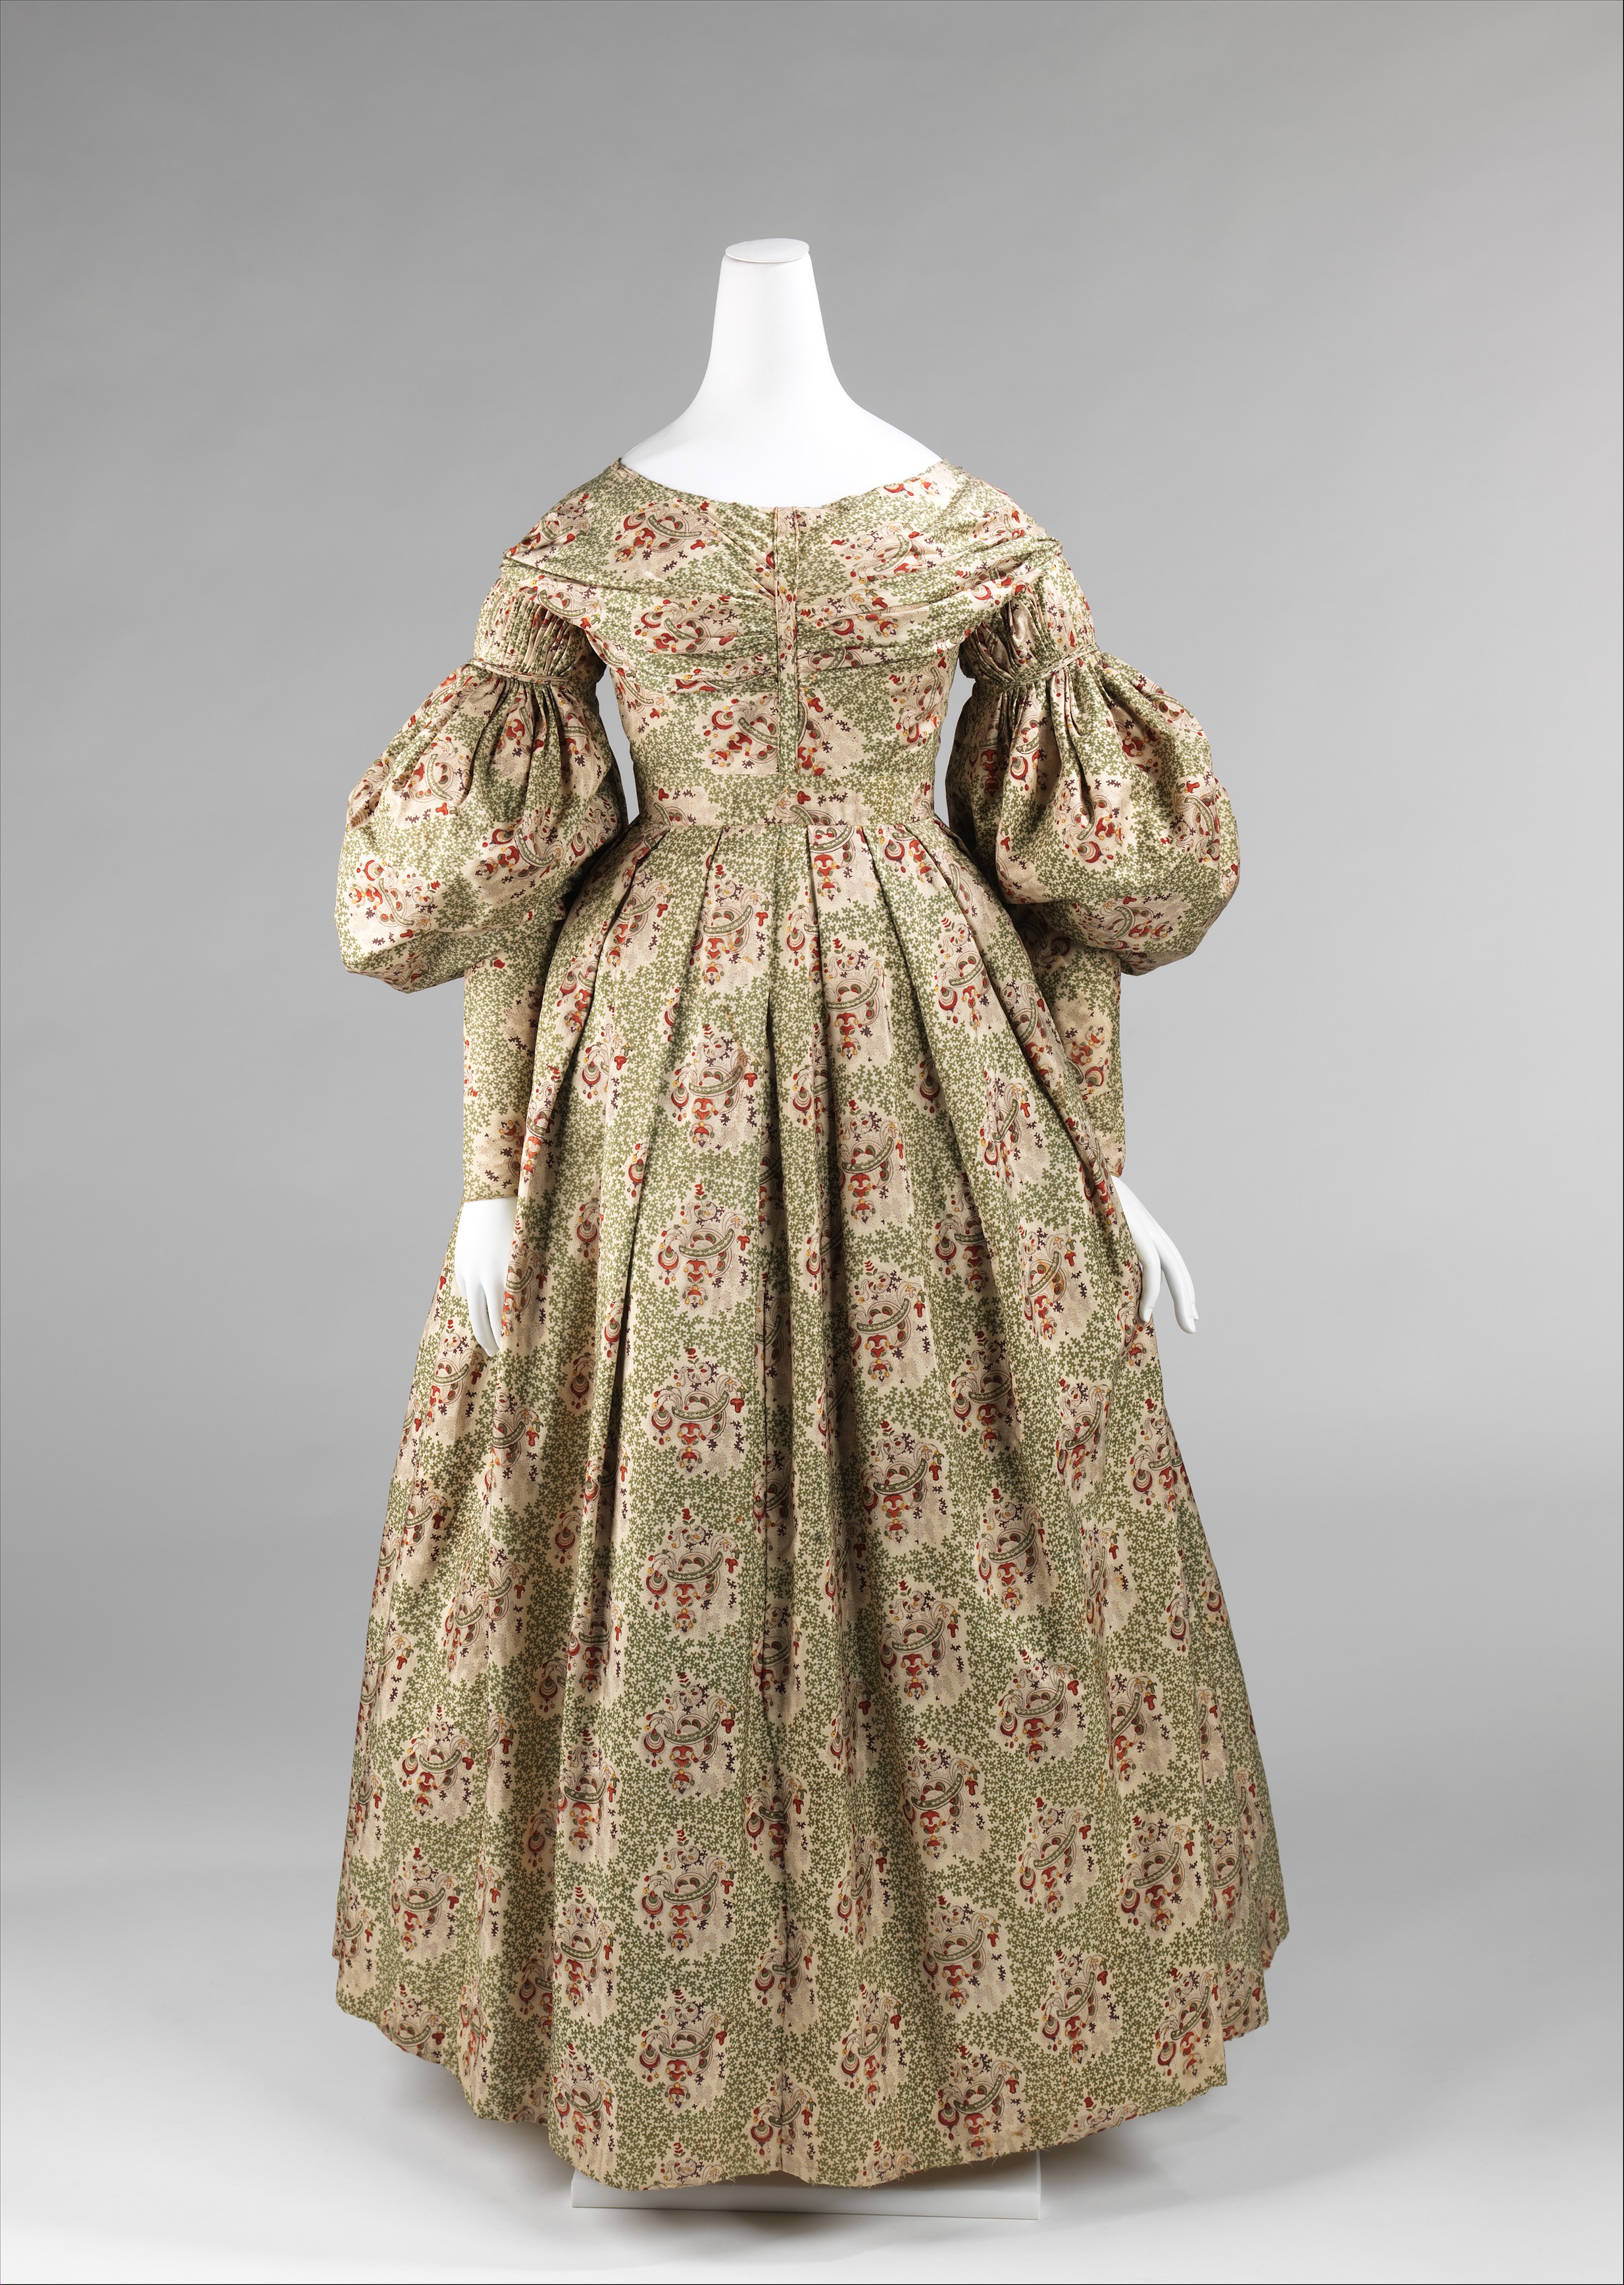 Morning dress | American | The Metropolitan Museum of Art